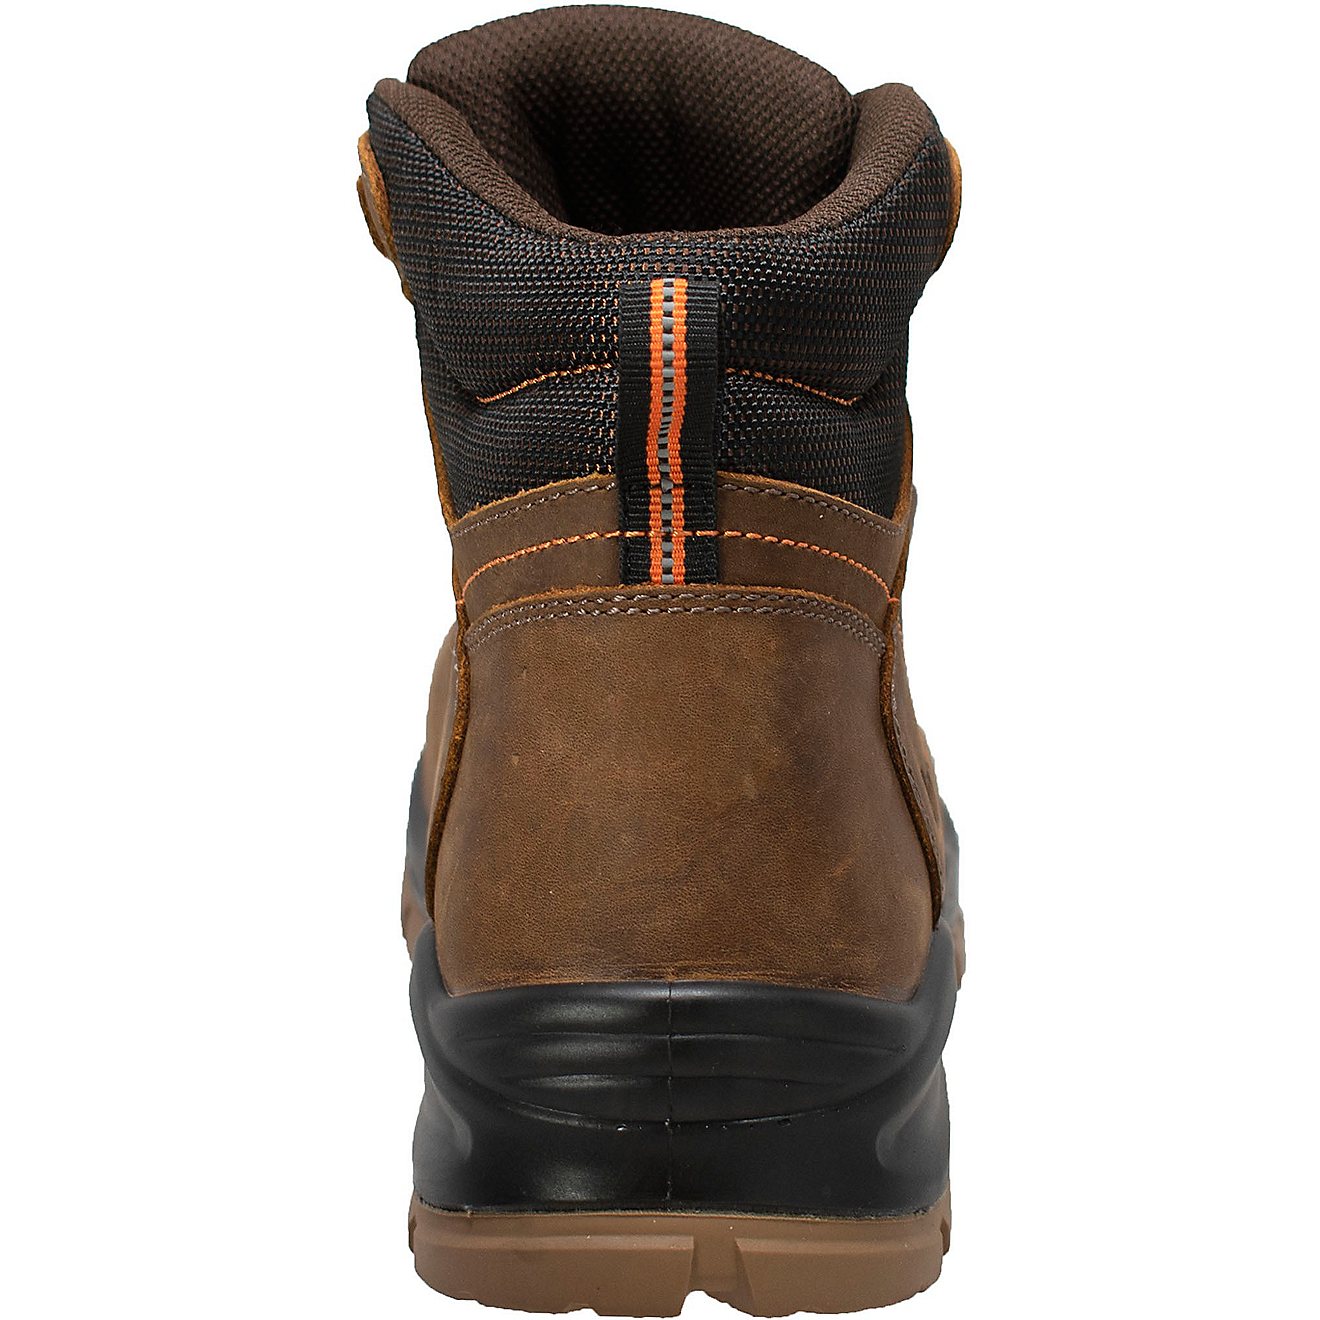 AdTec Men's Waterproof Composite Toe Work Hiker Boots                                                                            - view number 2